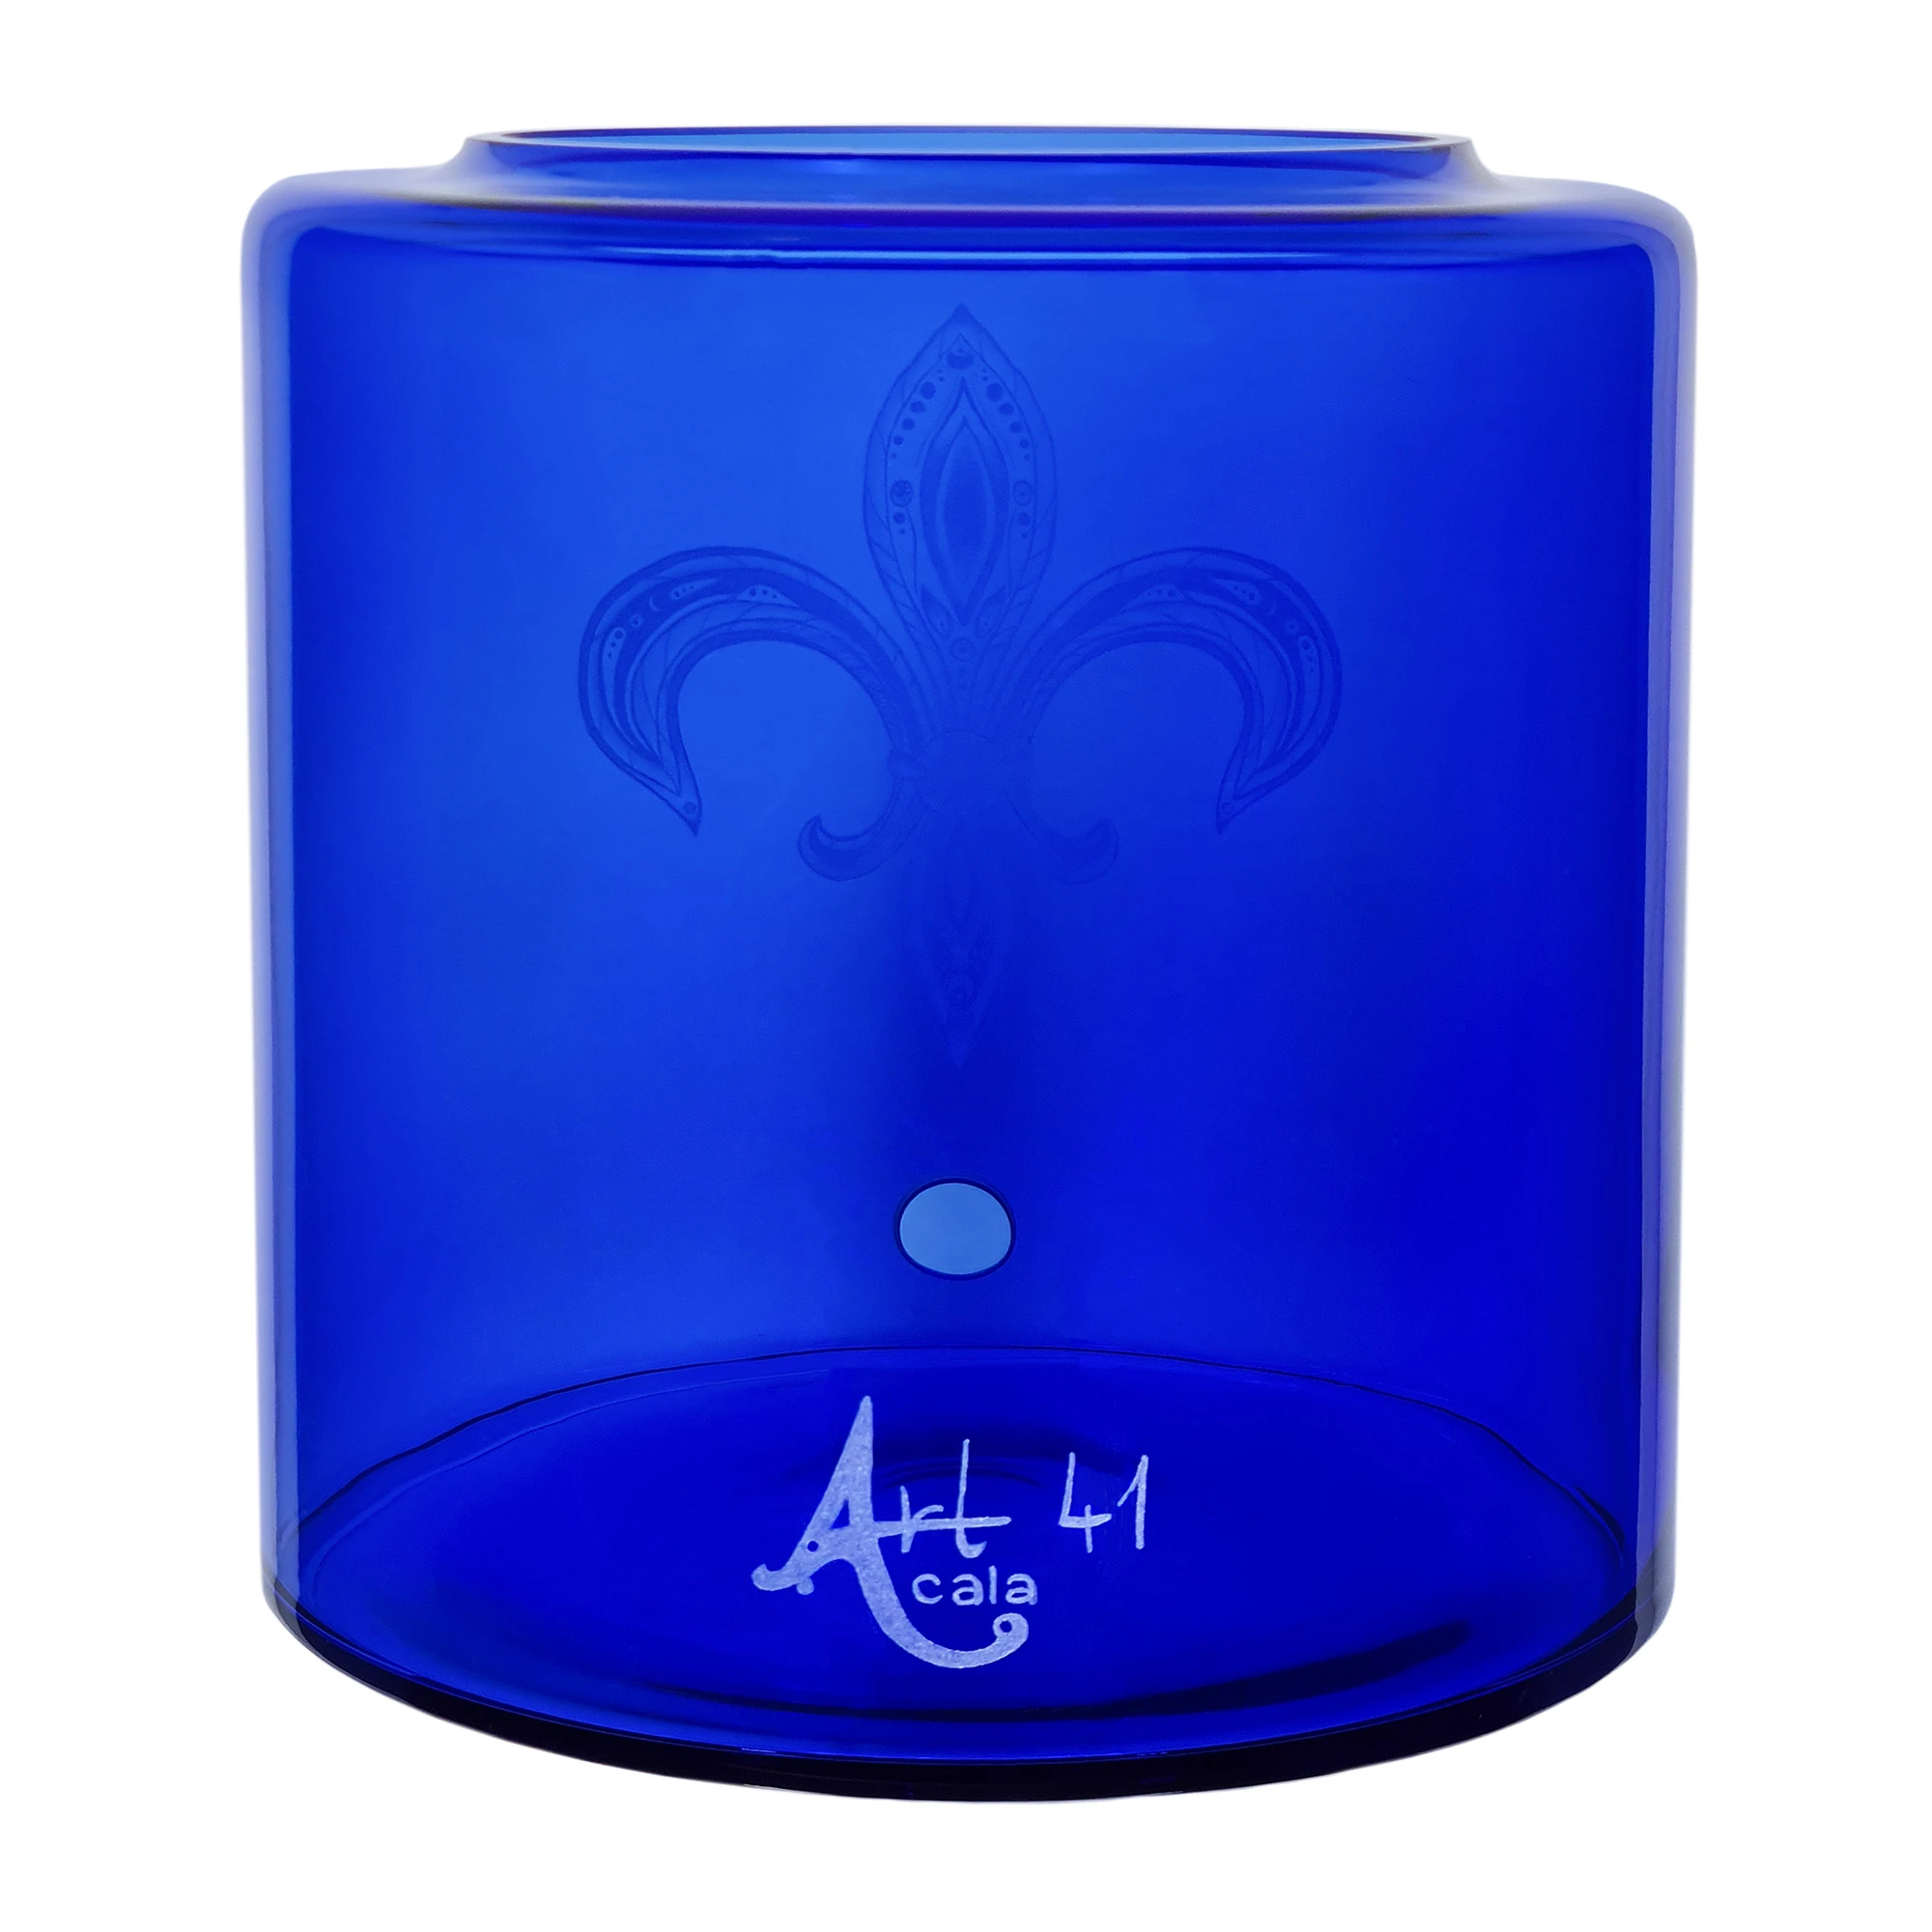 Vorratstank für einen Acala Wasserfilter Mini mit einer Handgravur. Die Gravur zeigt, auf blauem Glas, einer Lilie in der filigrane Muster sind. Ansicht von hinten.